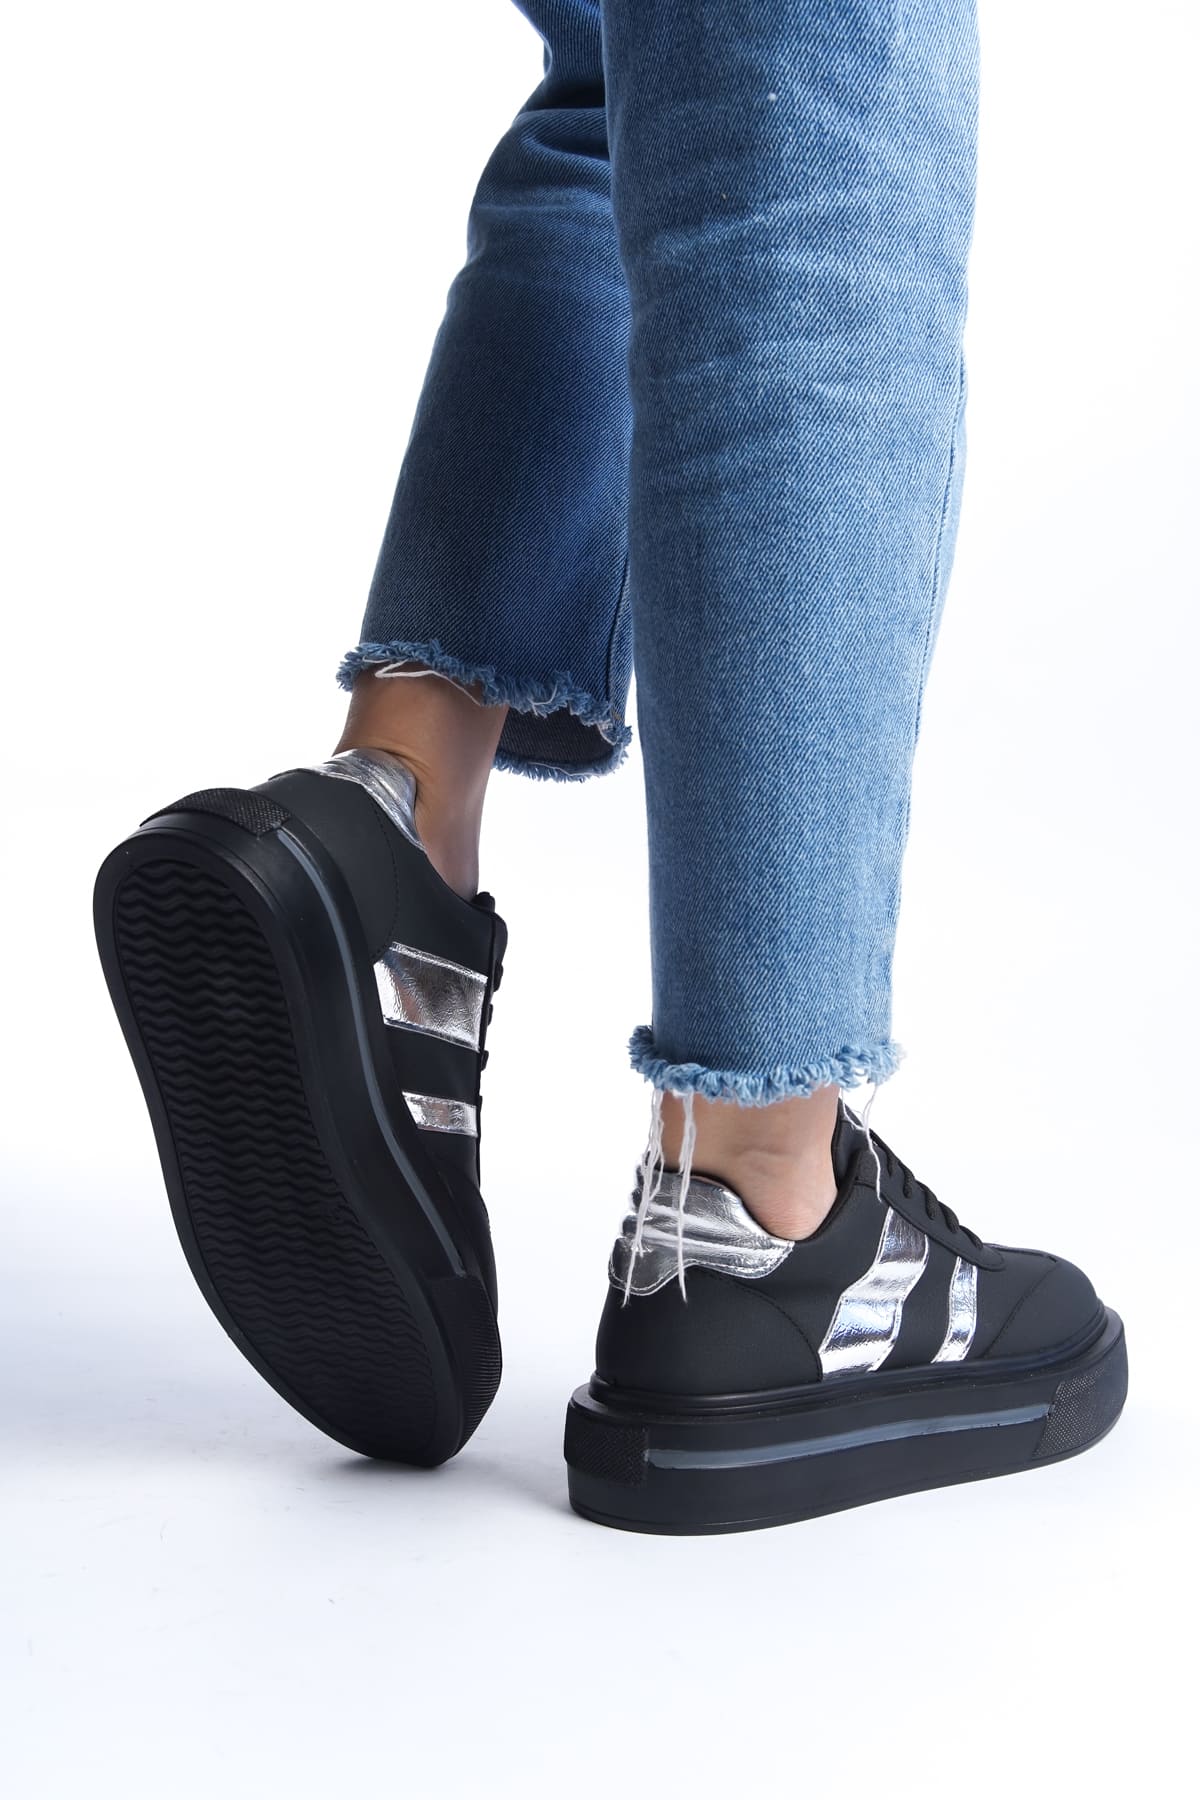 DIAS Bağcıklı Ortopedik Taban Kadın Sneaker Ayakkabı  Siyah/Gümüş